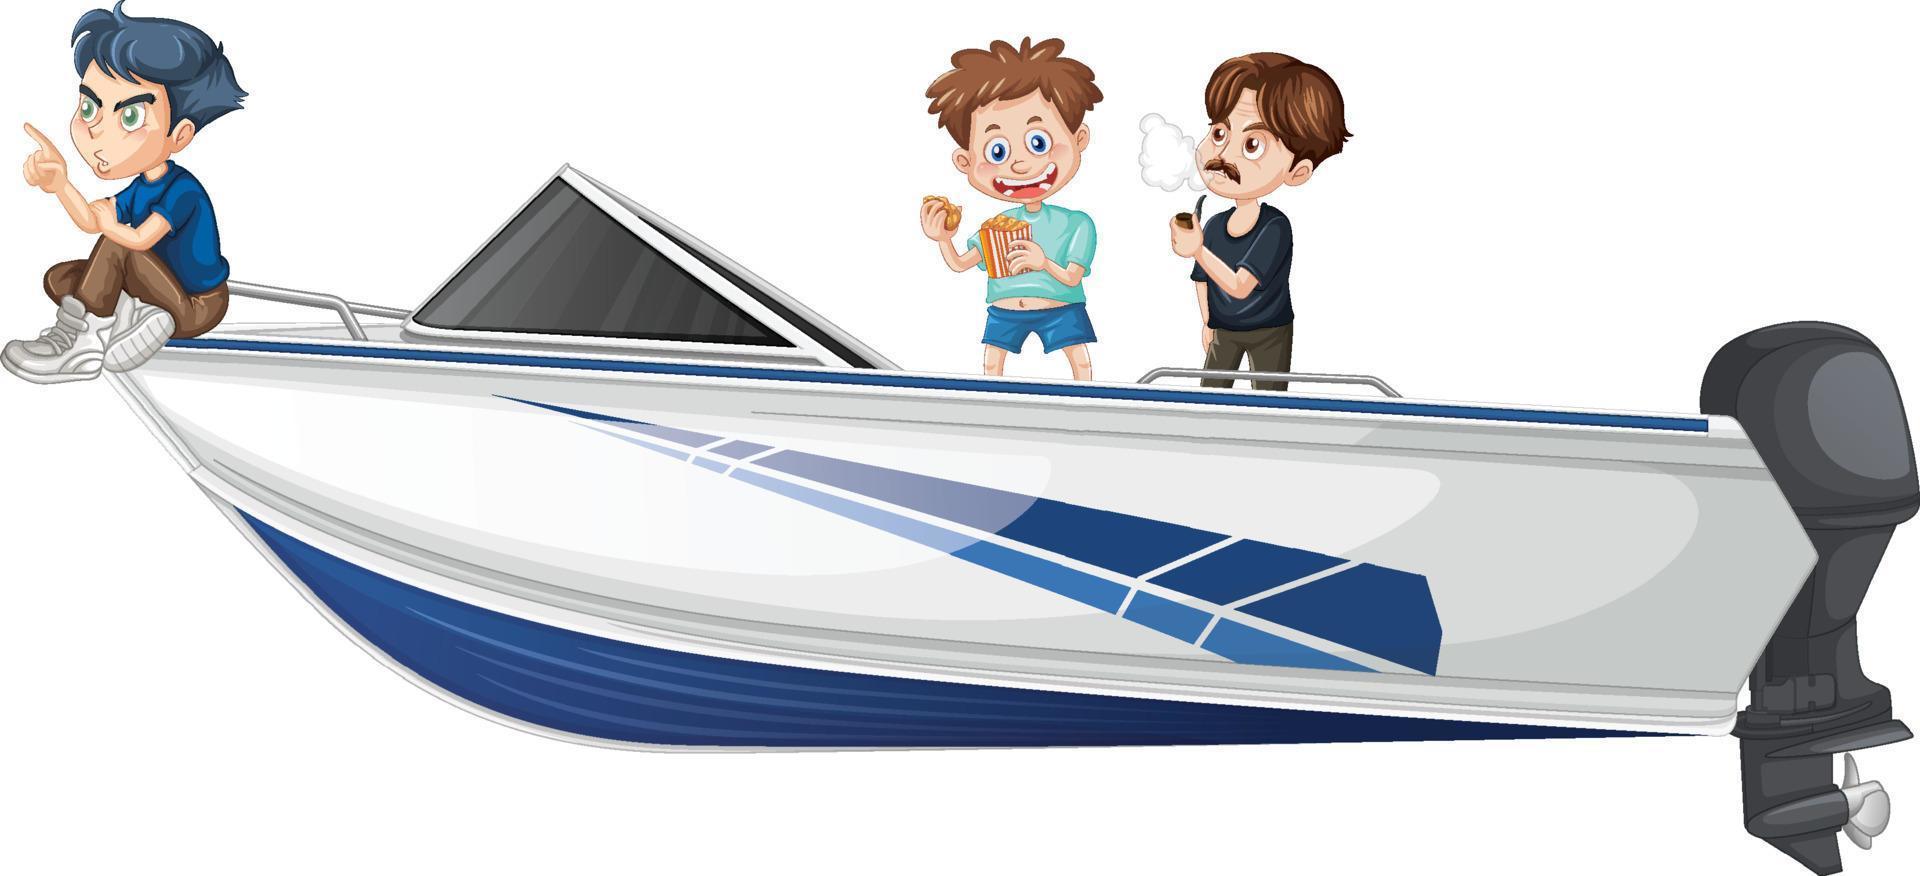 pojke och flicka står på en fartbåt på en vit bakgrund vektor